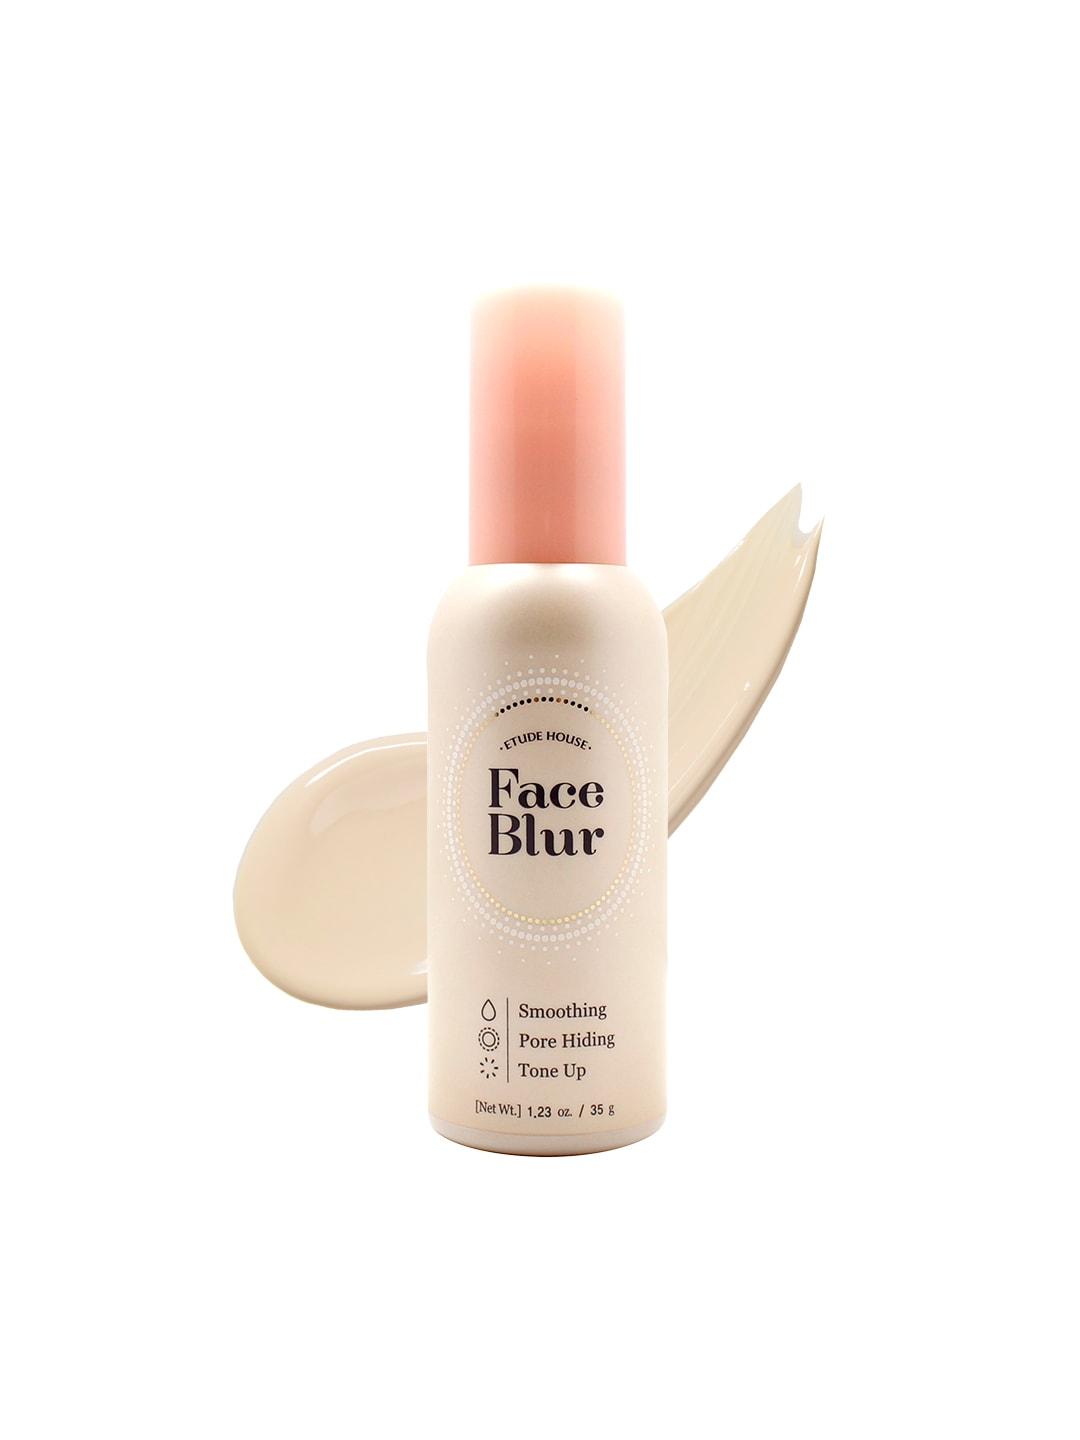 etude face blur spf 33 pa++ smoothing pore hiding tone up primer - 35 g